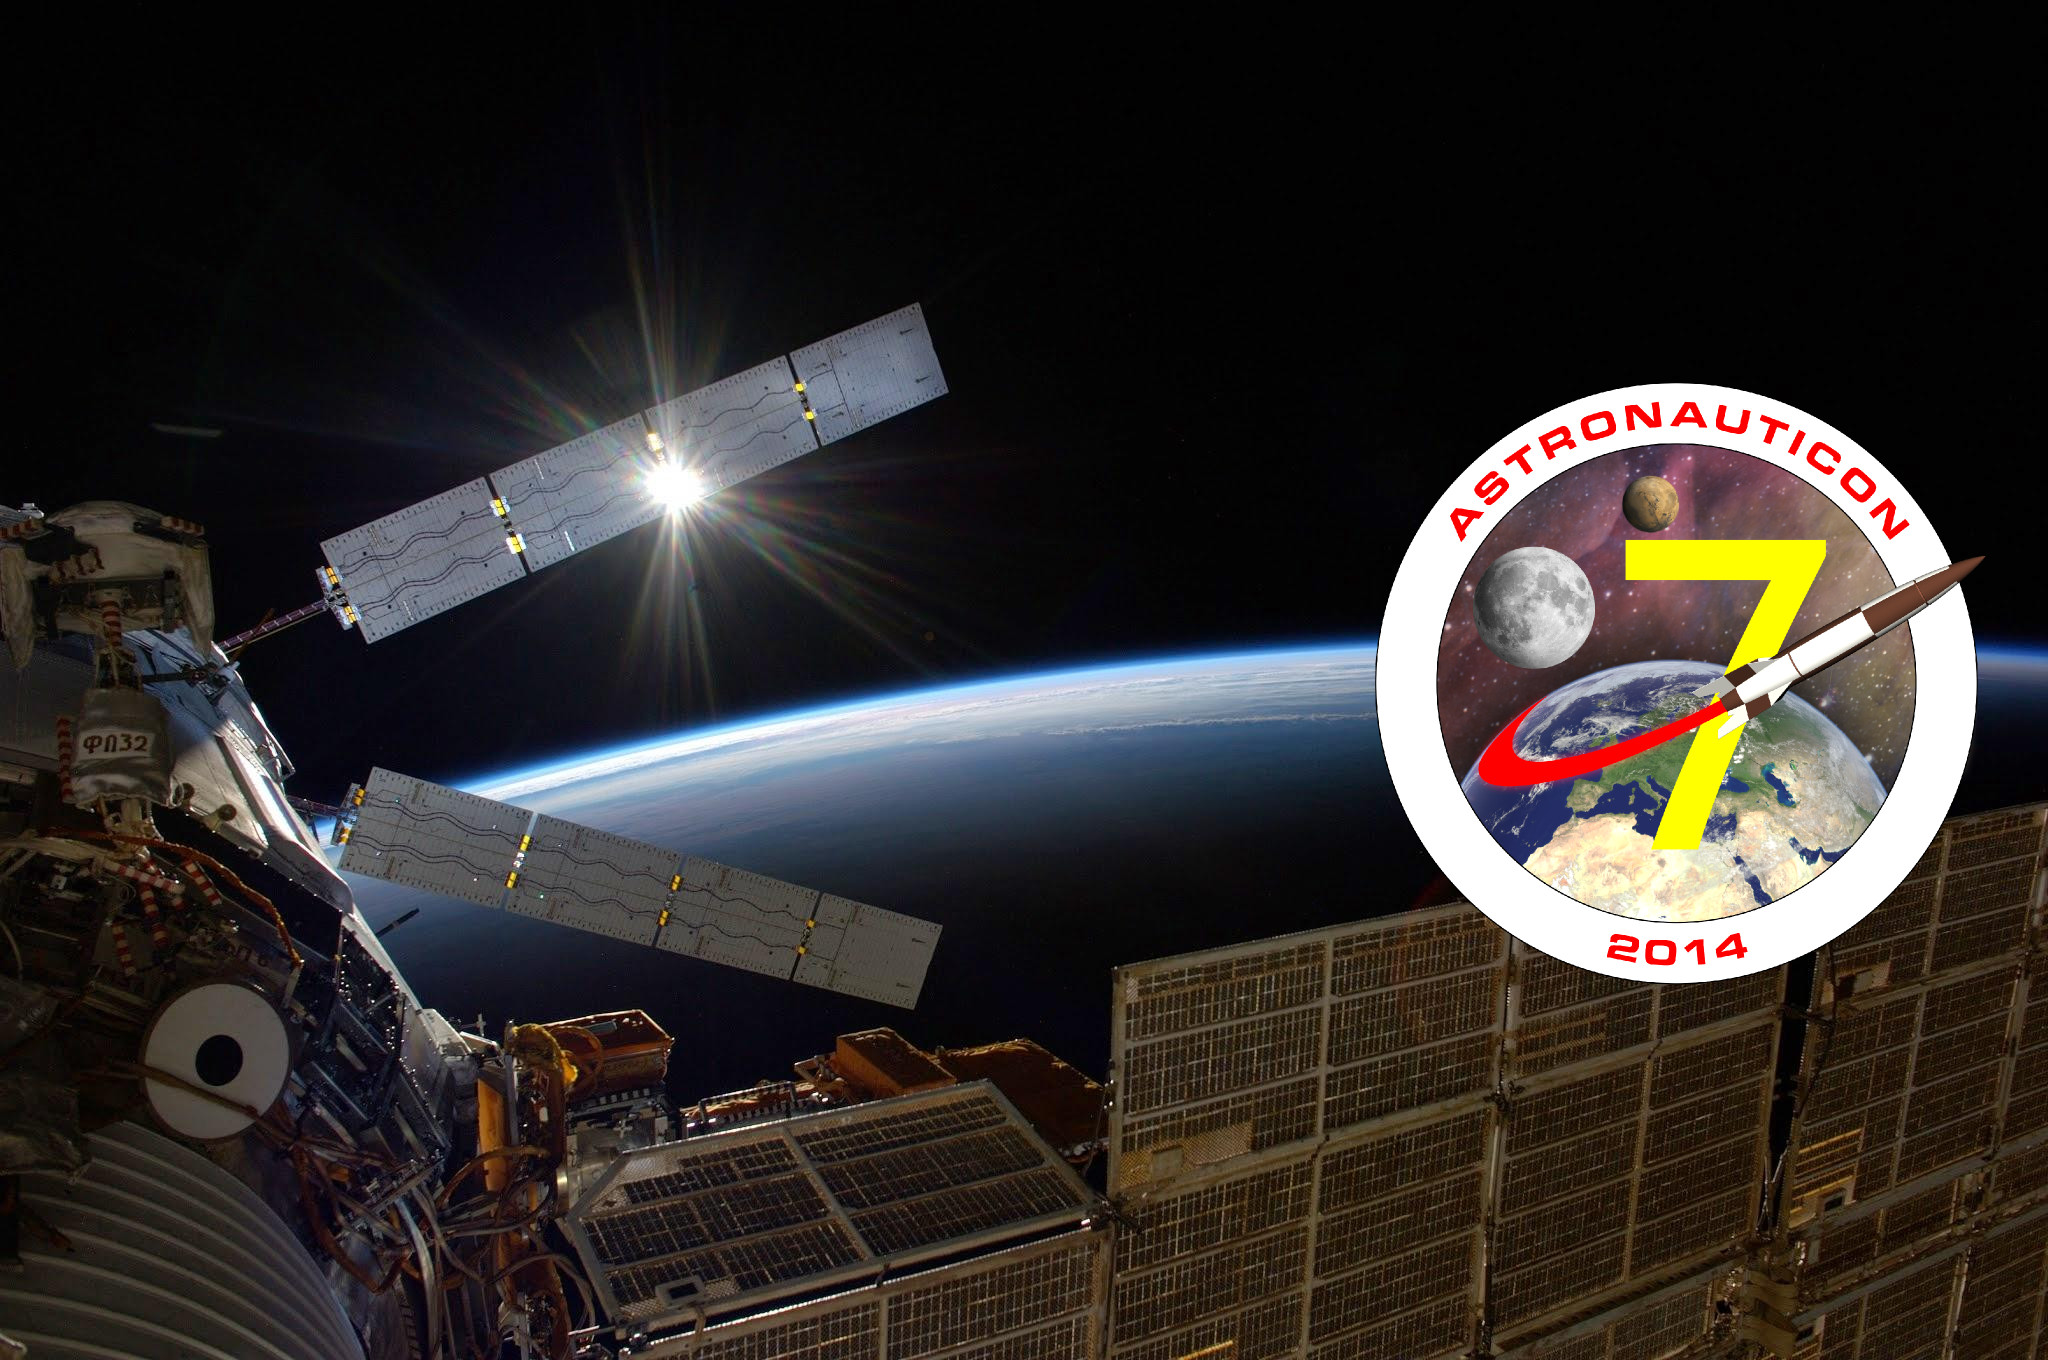 Banneri di AstronautiCON 7. Credit: NASA/Riccardo Rossi